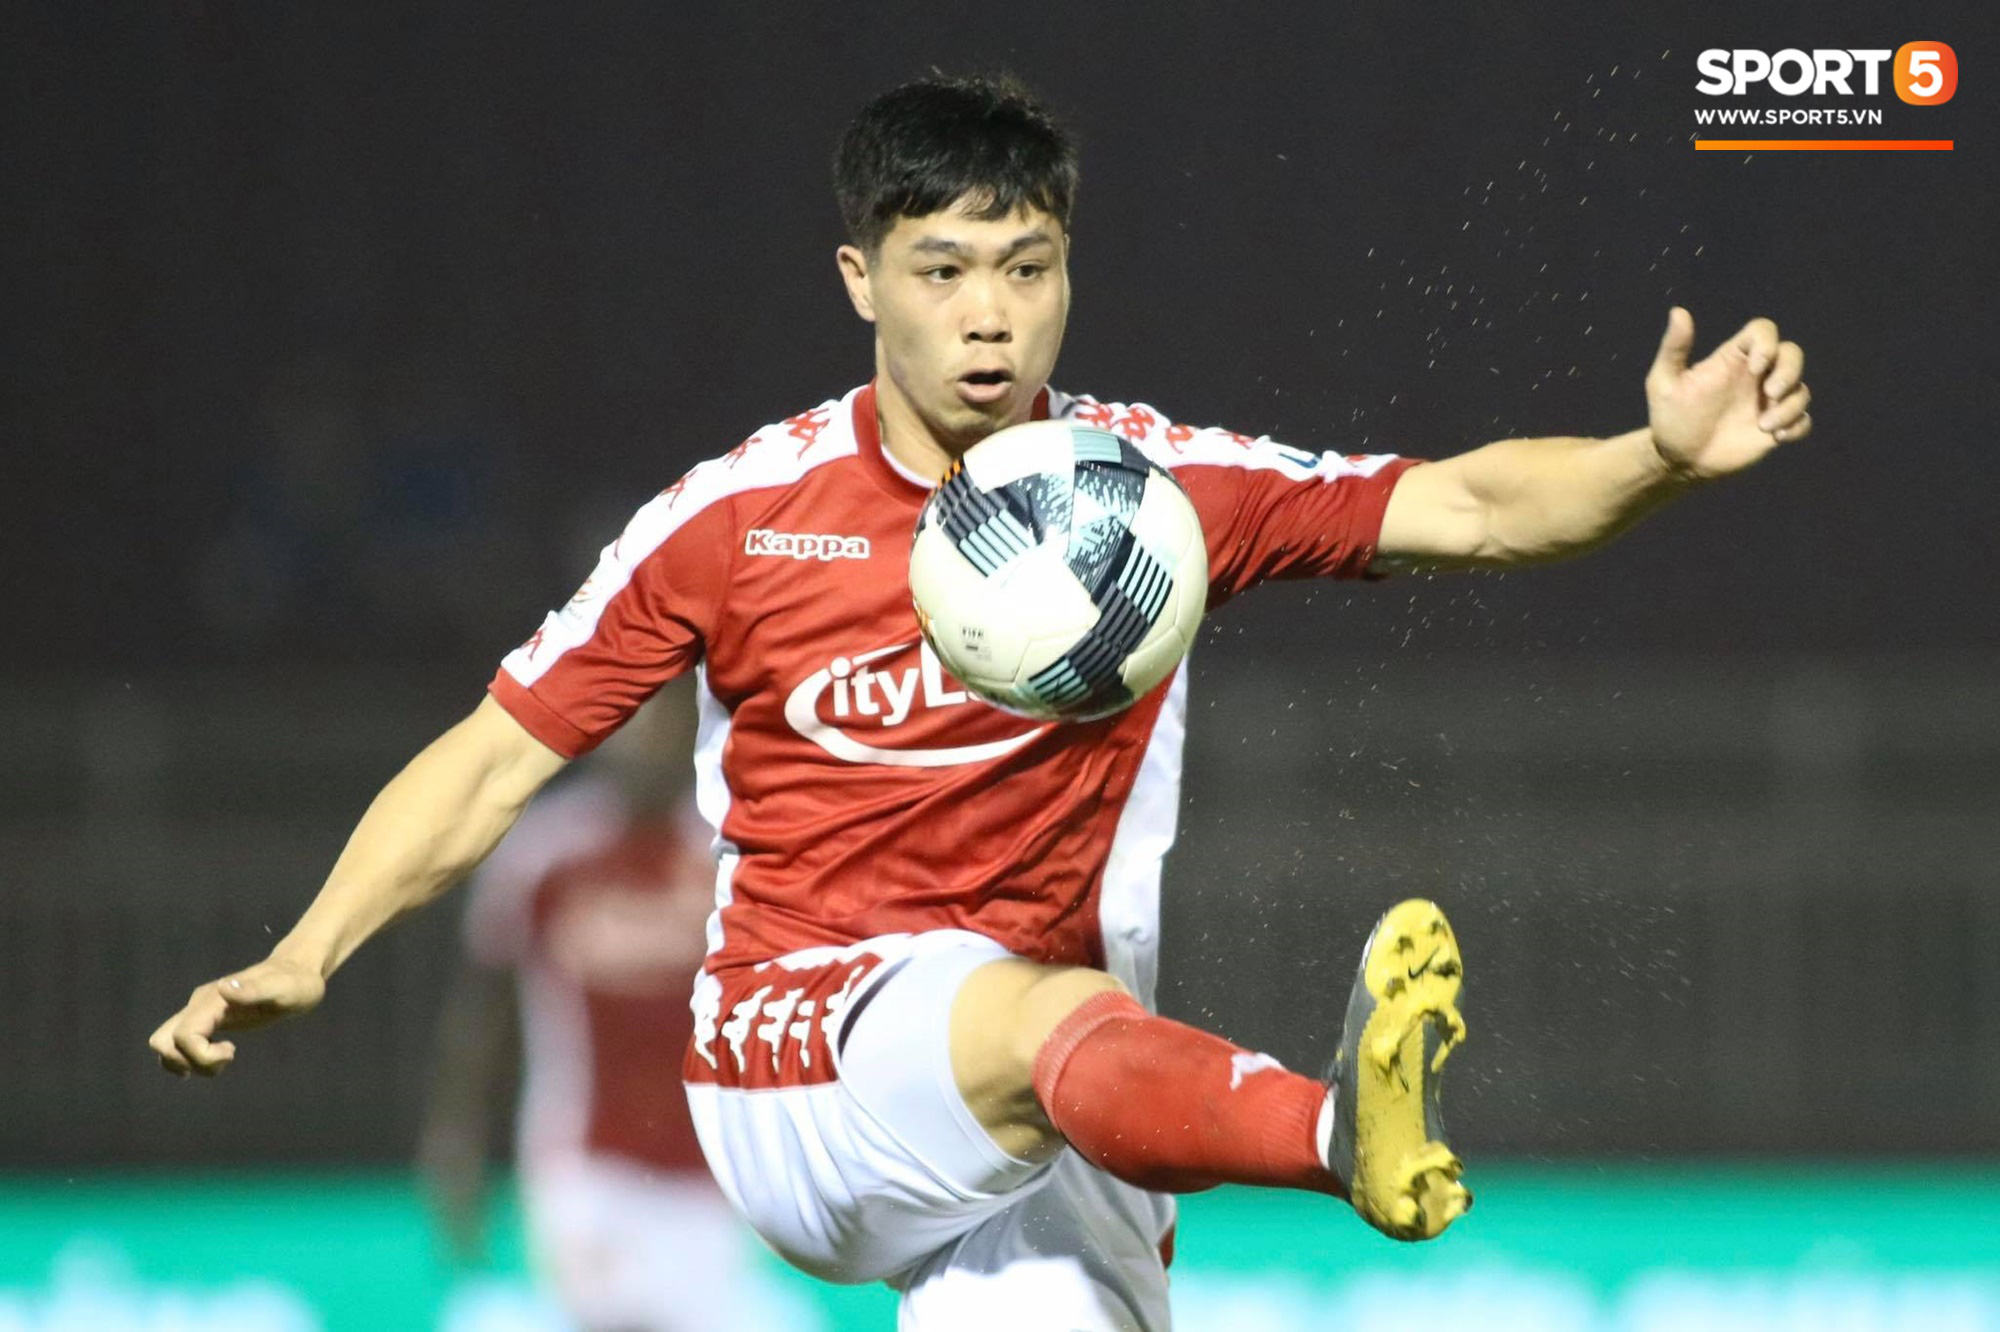 Vòng 6 V.League 2020: Công Phượng đối mặt với nhiệm vụ khó nhất Việt Nam tại quê hương - Ảnh 2.